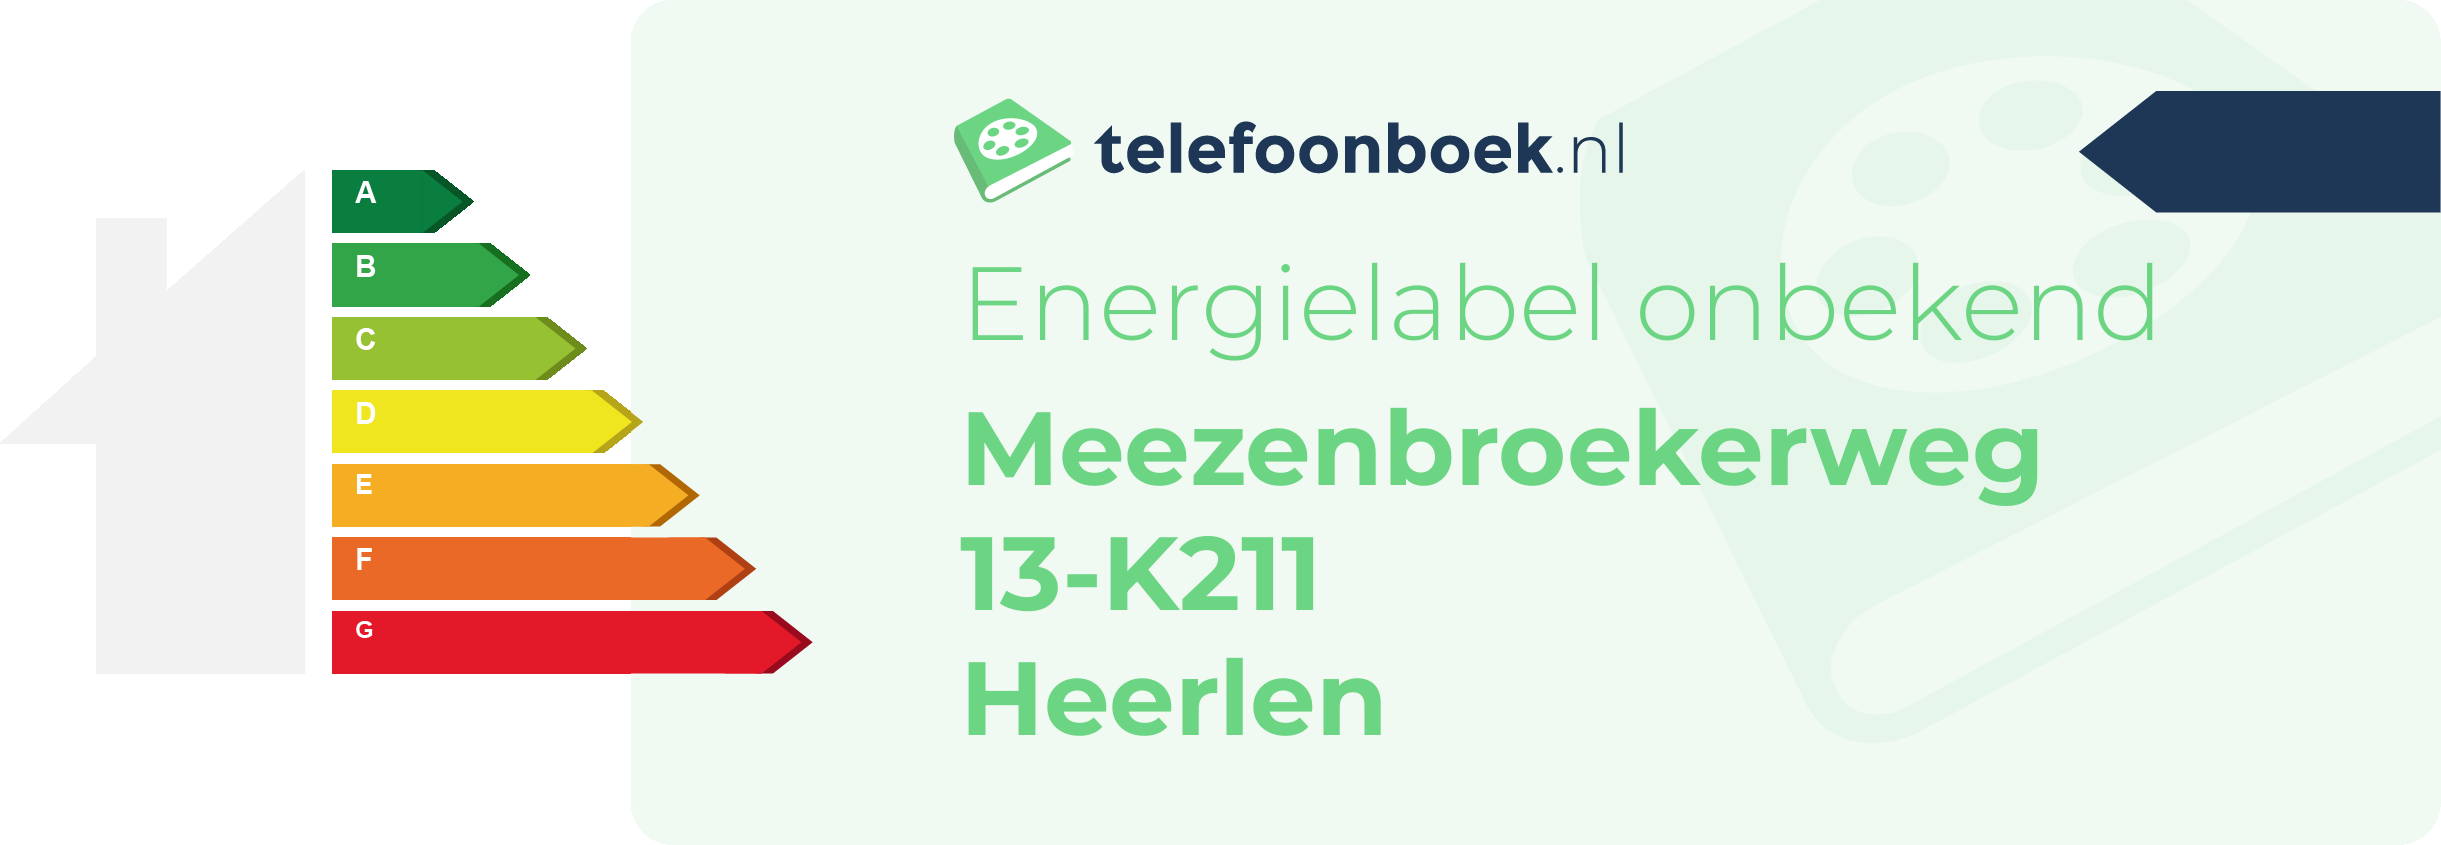 Energielabel Meezenbroekerweg 13-K211 Heerlen